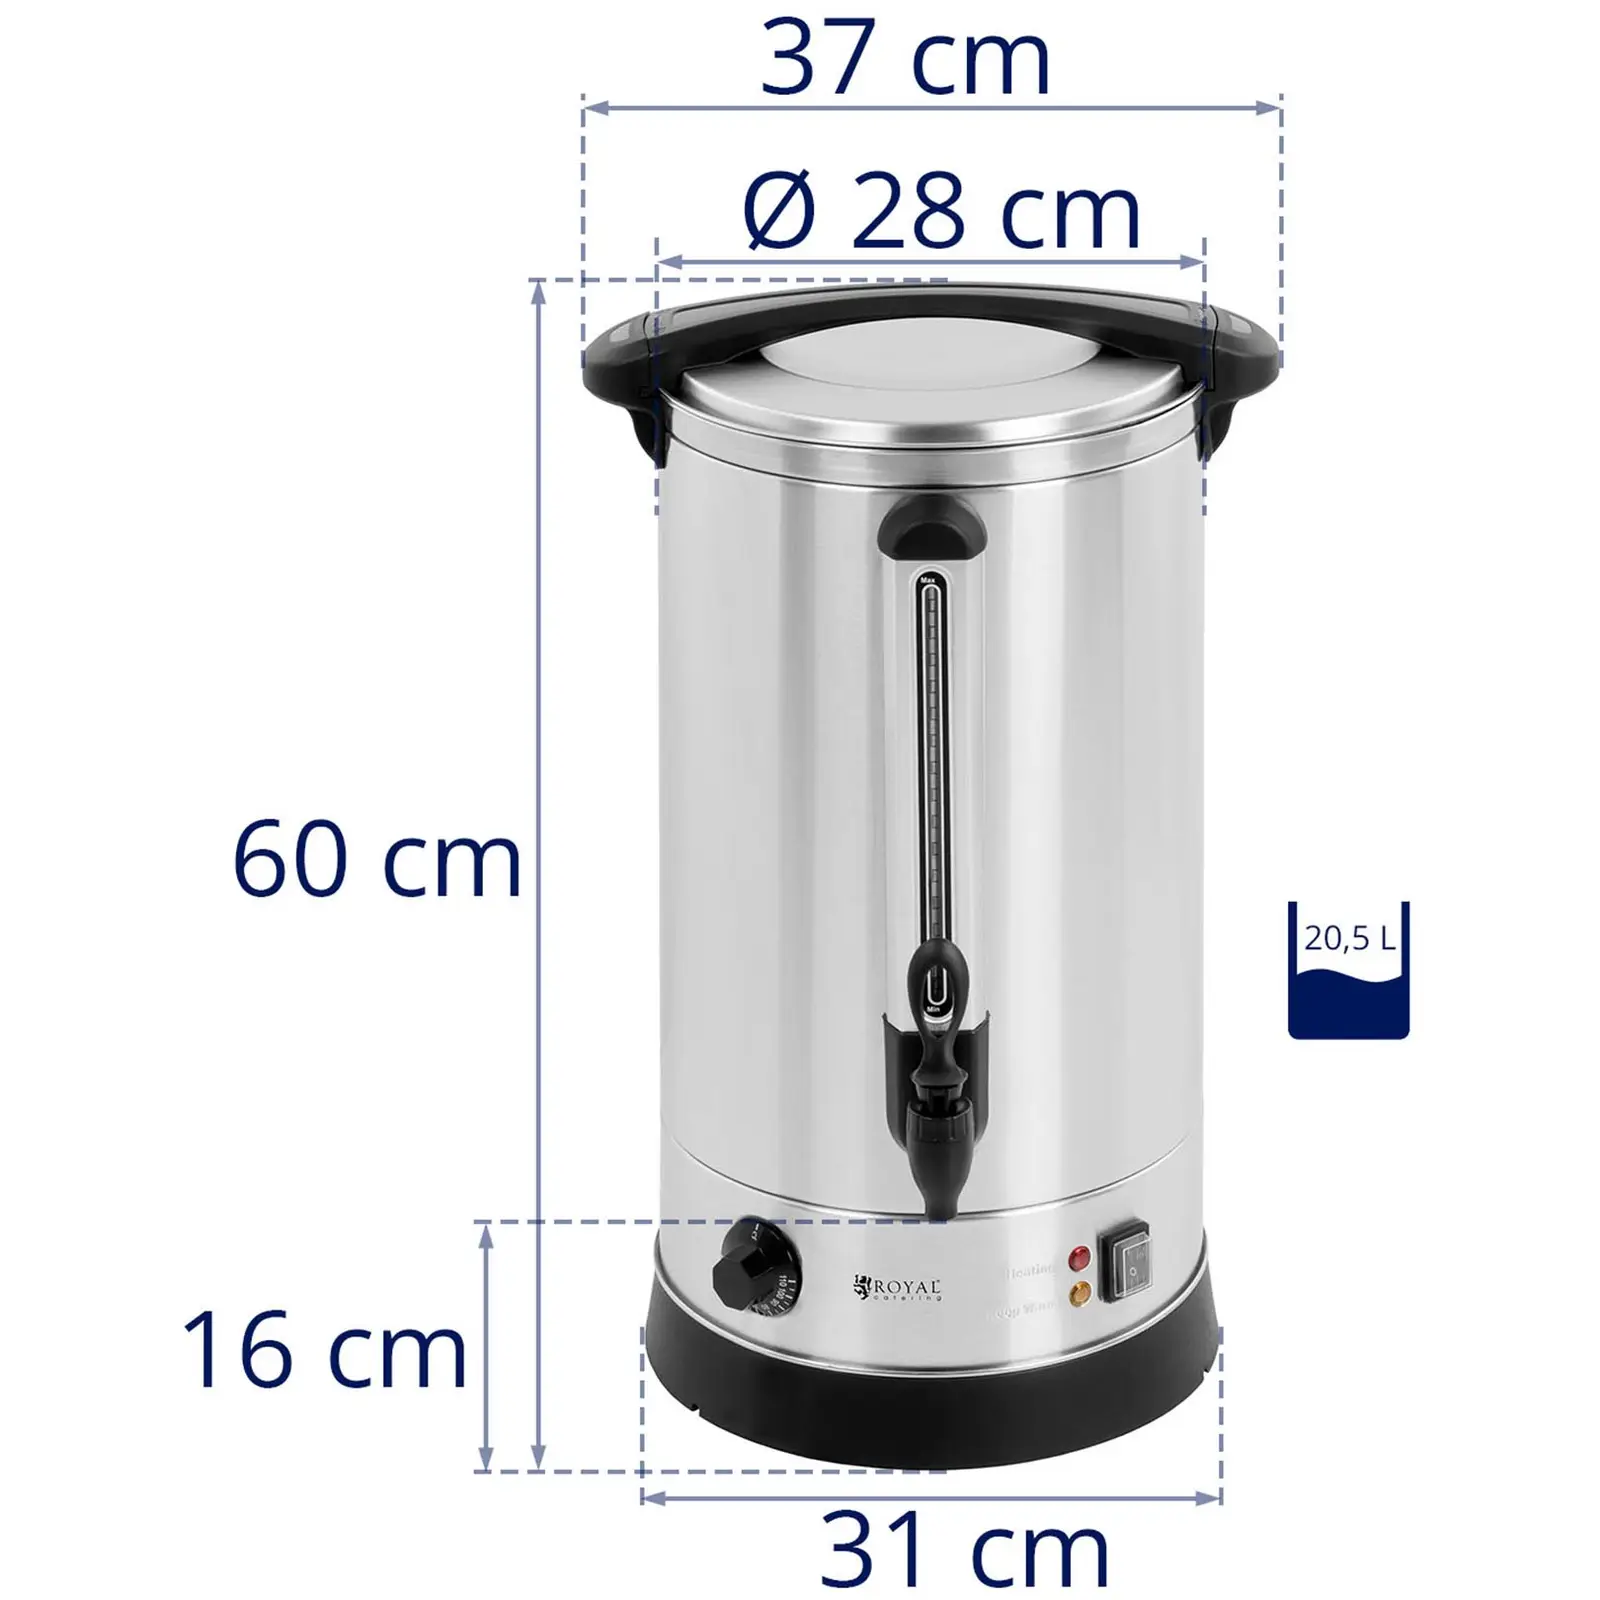 Heißwasserspender - 20,5L - Wasserkocher - doppelwandig - Edelstahl	